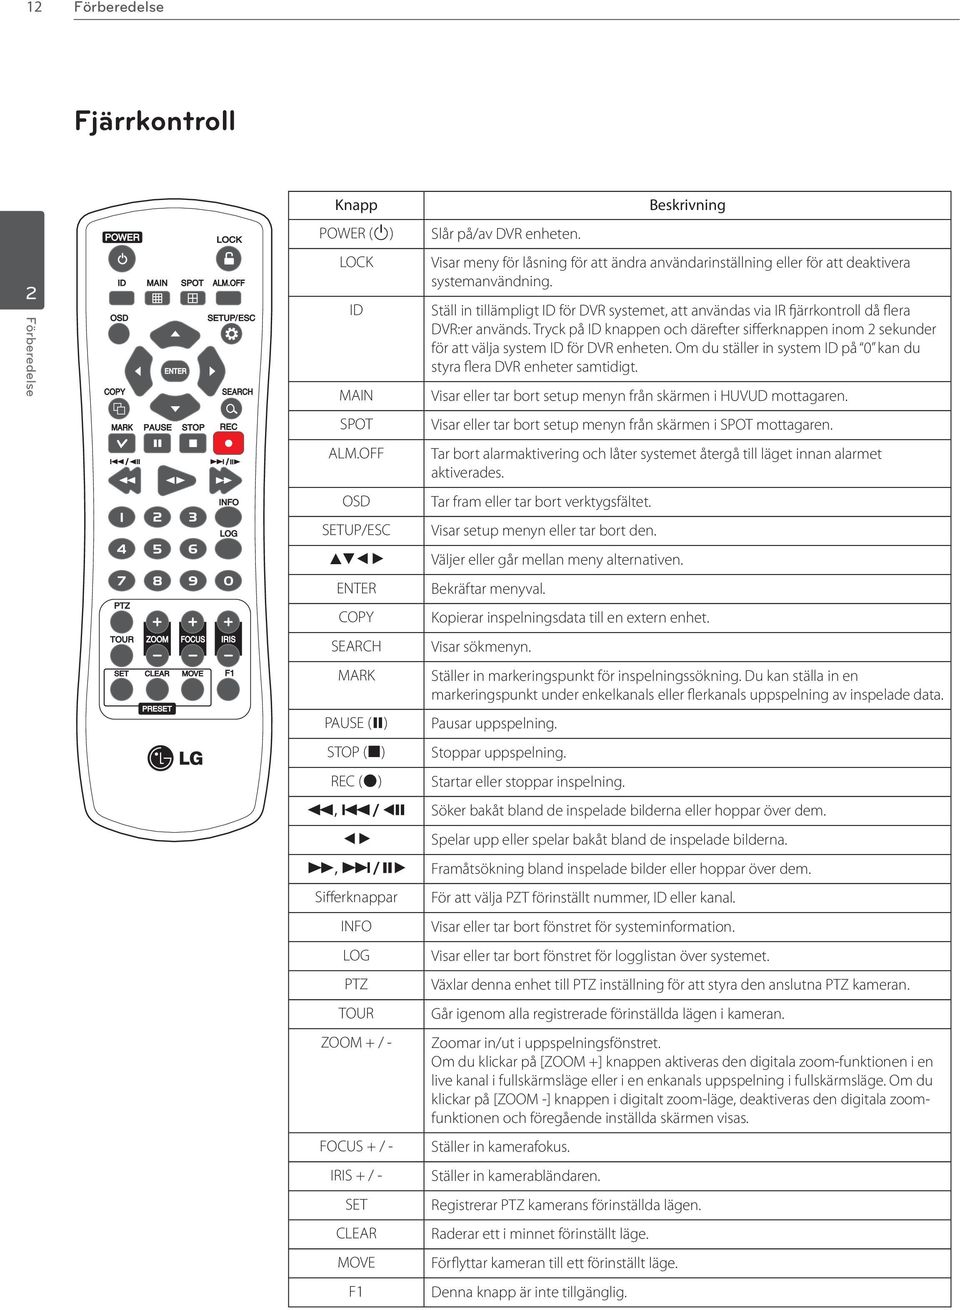 Ställ in tillämpligt ID för DVR systemet, att användas via IR fjärrkontroll då flera DVR:er används.